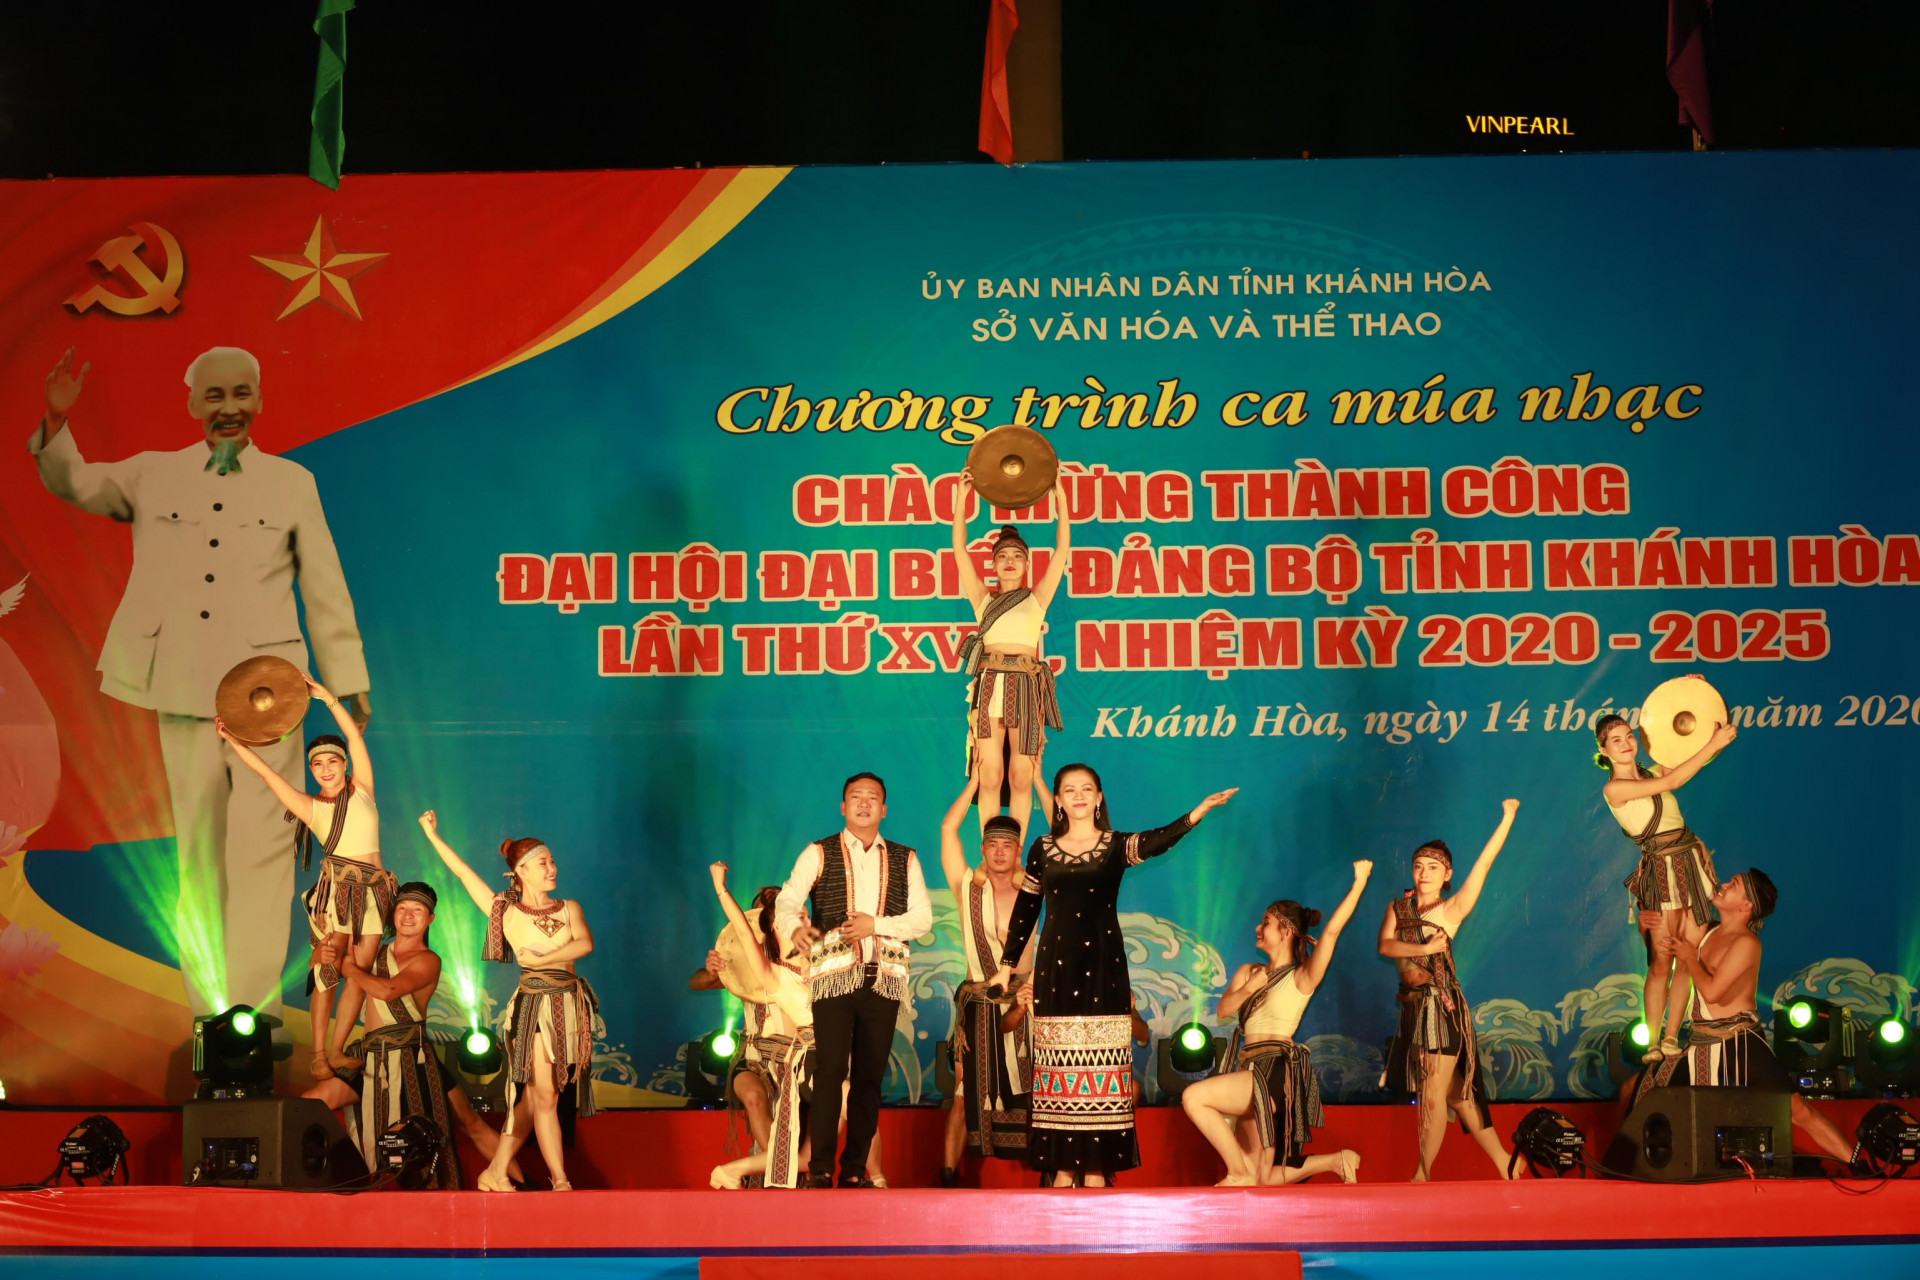 Nhân sự kiện Đại hội Đảng bộ tỉnh Khánh Hòa lần thứ XVIII thành công, các nghệ sĩ, diễn viên của ngành văn hóa đã thực hiện chương trình nghệ thuật chào mừng. 